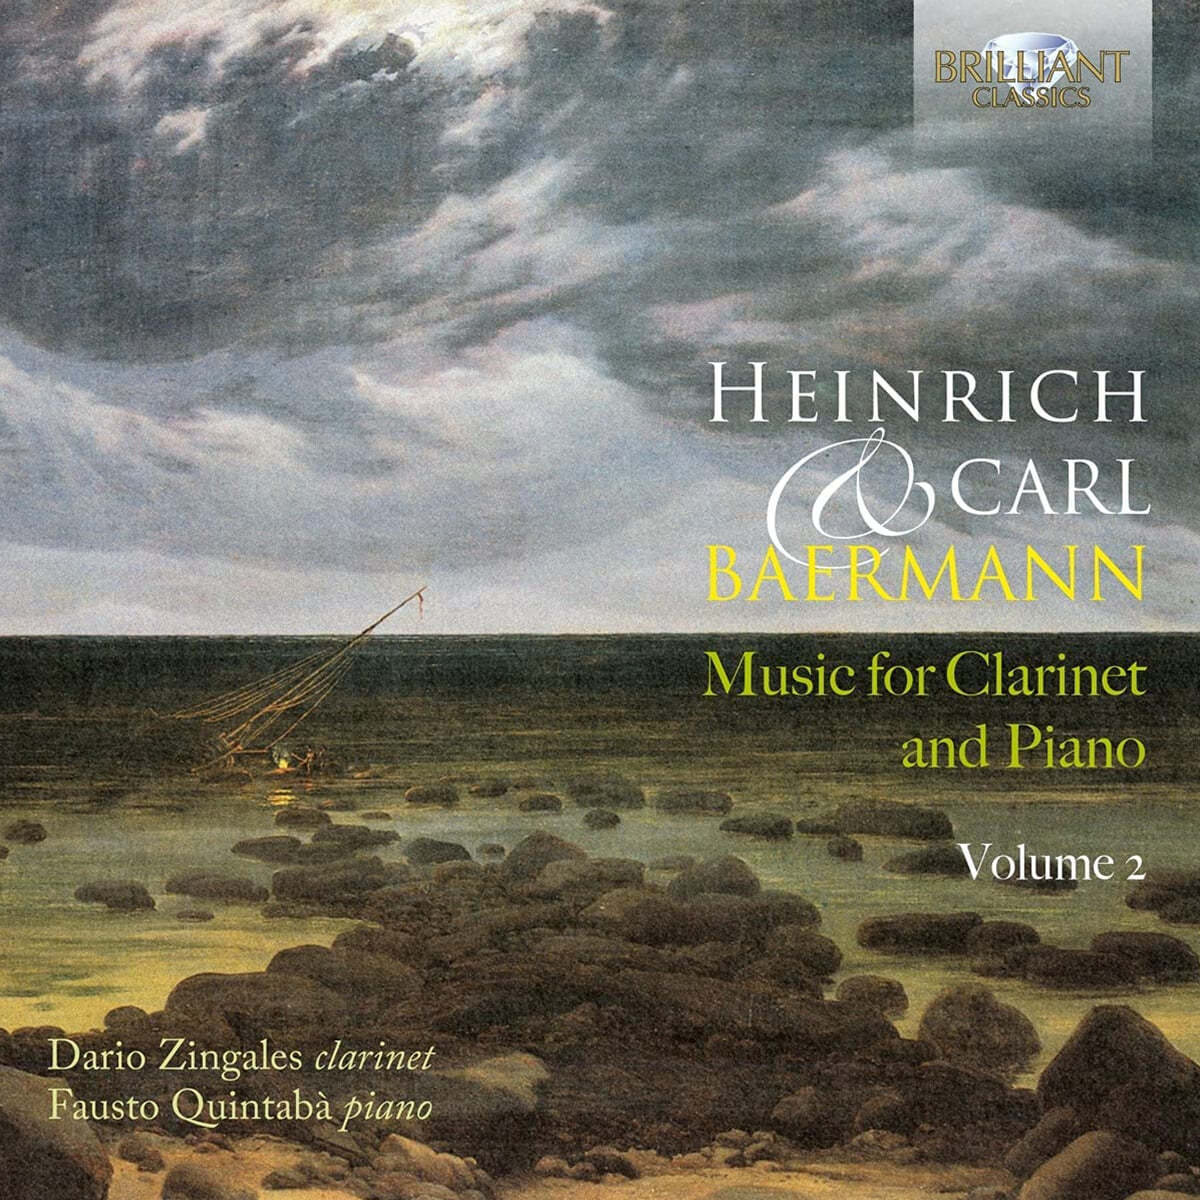 하인리히 / 카를 바에르만: 클라리넷, 피아노 모음곡 (Heinrich &amp; Karl Baermann: Music for Clarinet and Piano) 